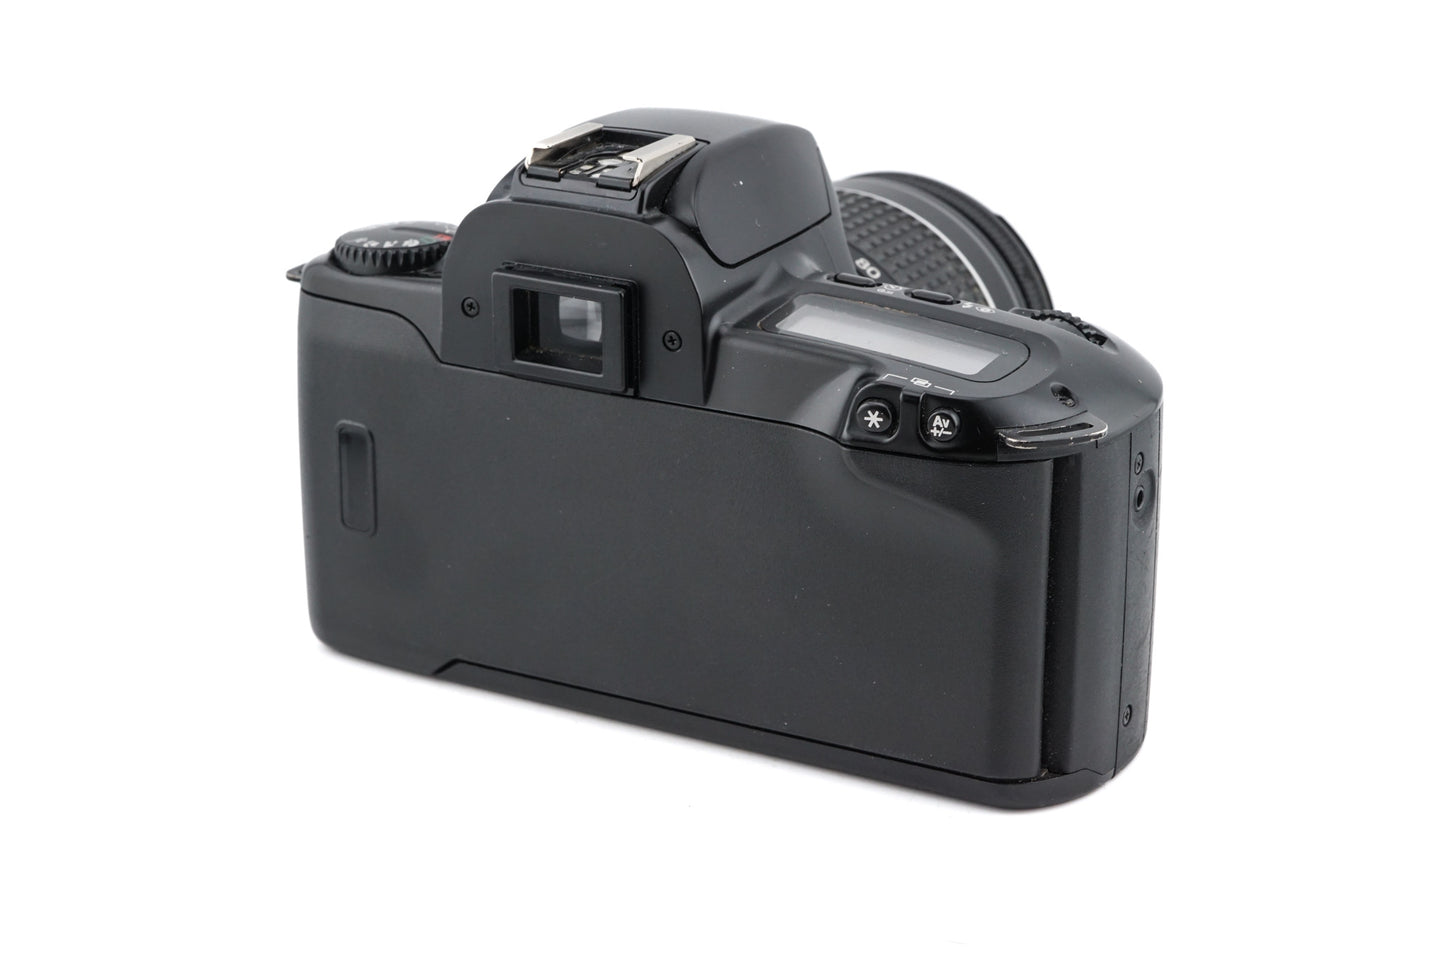 Canon EOS 500 + 28-80mm f3.5-5.6 II